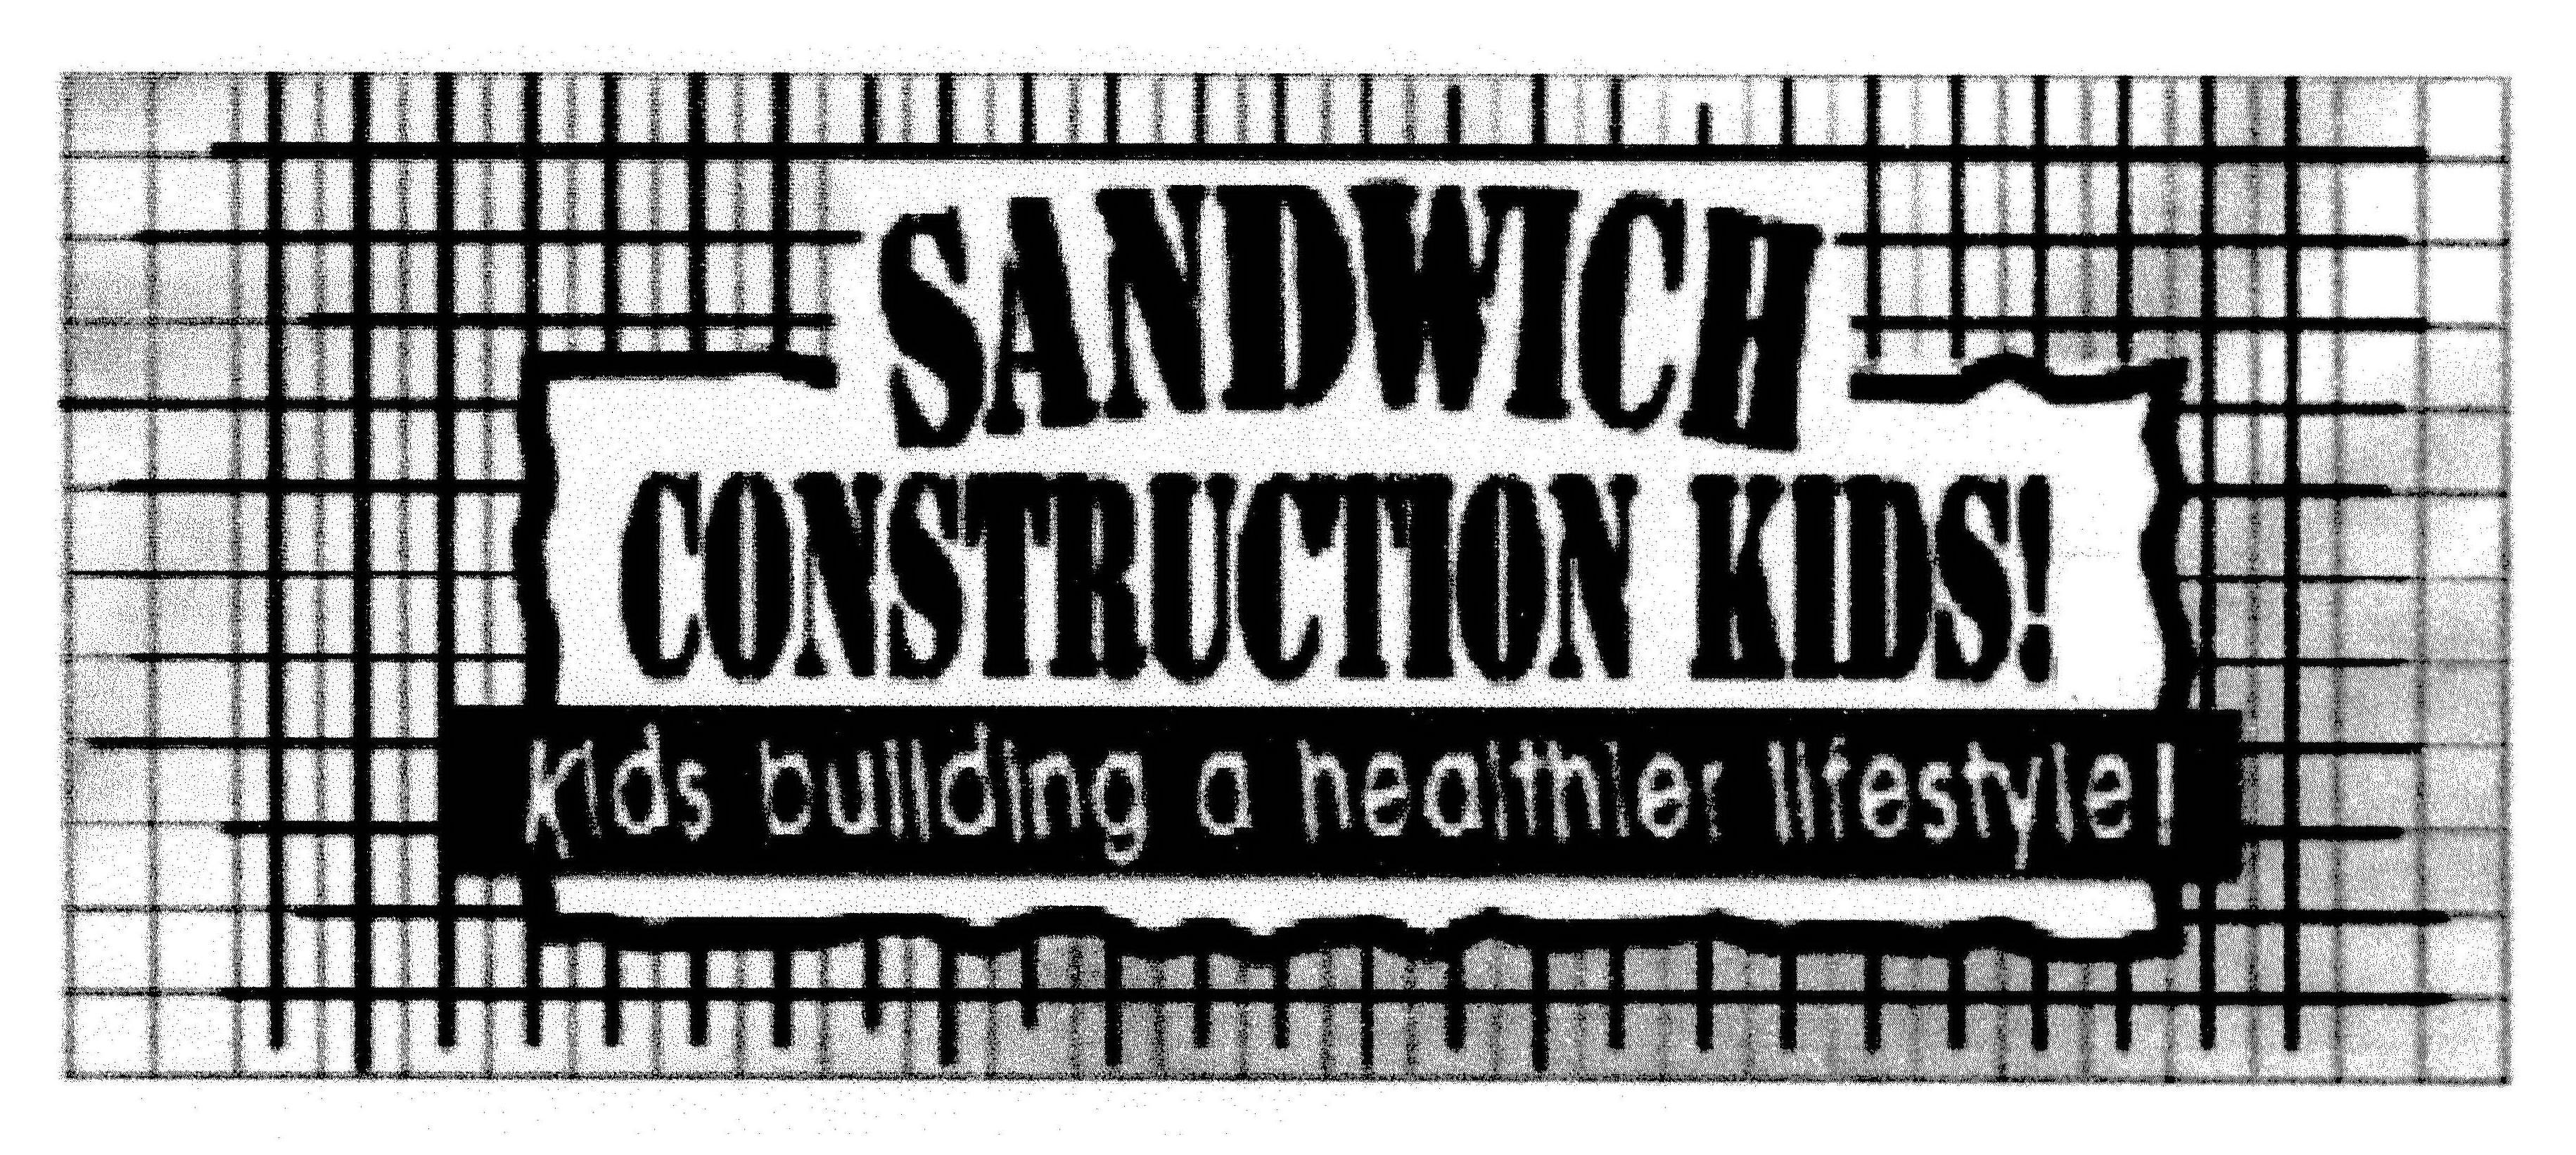  SANDWICH CONSTRUCTION KIDS! KIDS BUILDING A HEALTHIER LIFESTYLE